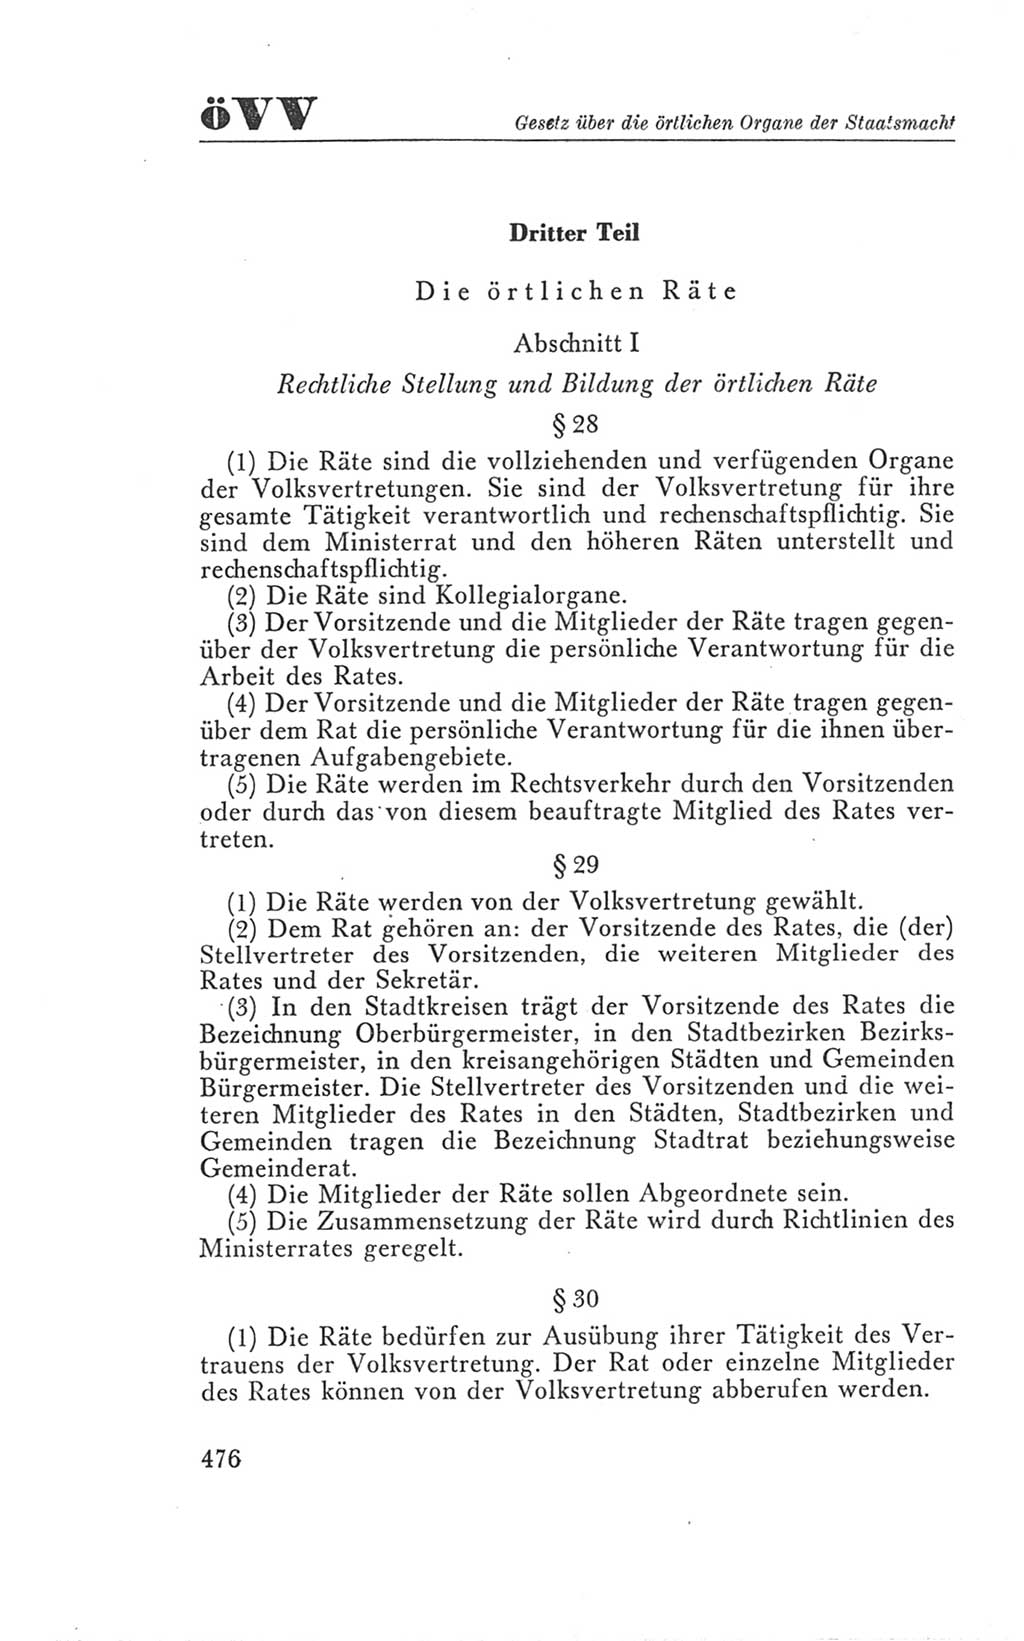 Handbuch der Volkskammer (VK) der Deutschen Demokratischen Republik (DDR), 3. Wahlperiode 1958-1963, Seite 476 (Hdb. VK. DDR 3. WP. 1958-1963, S. 476)